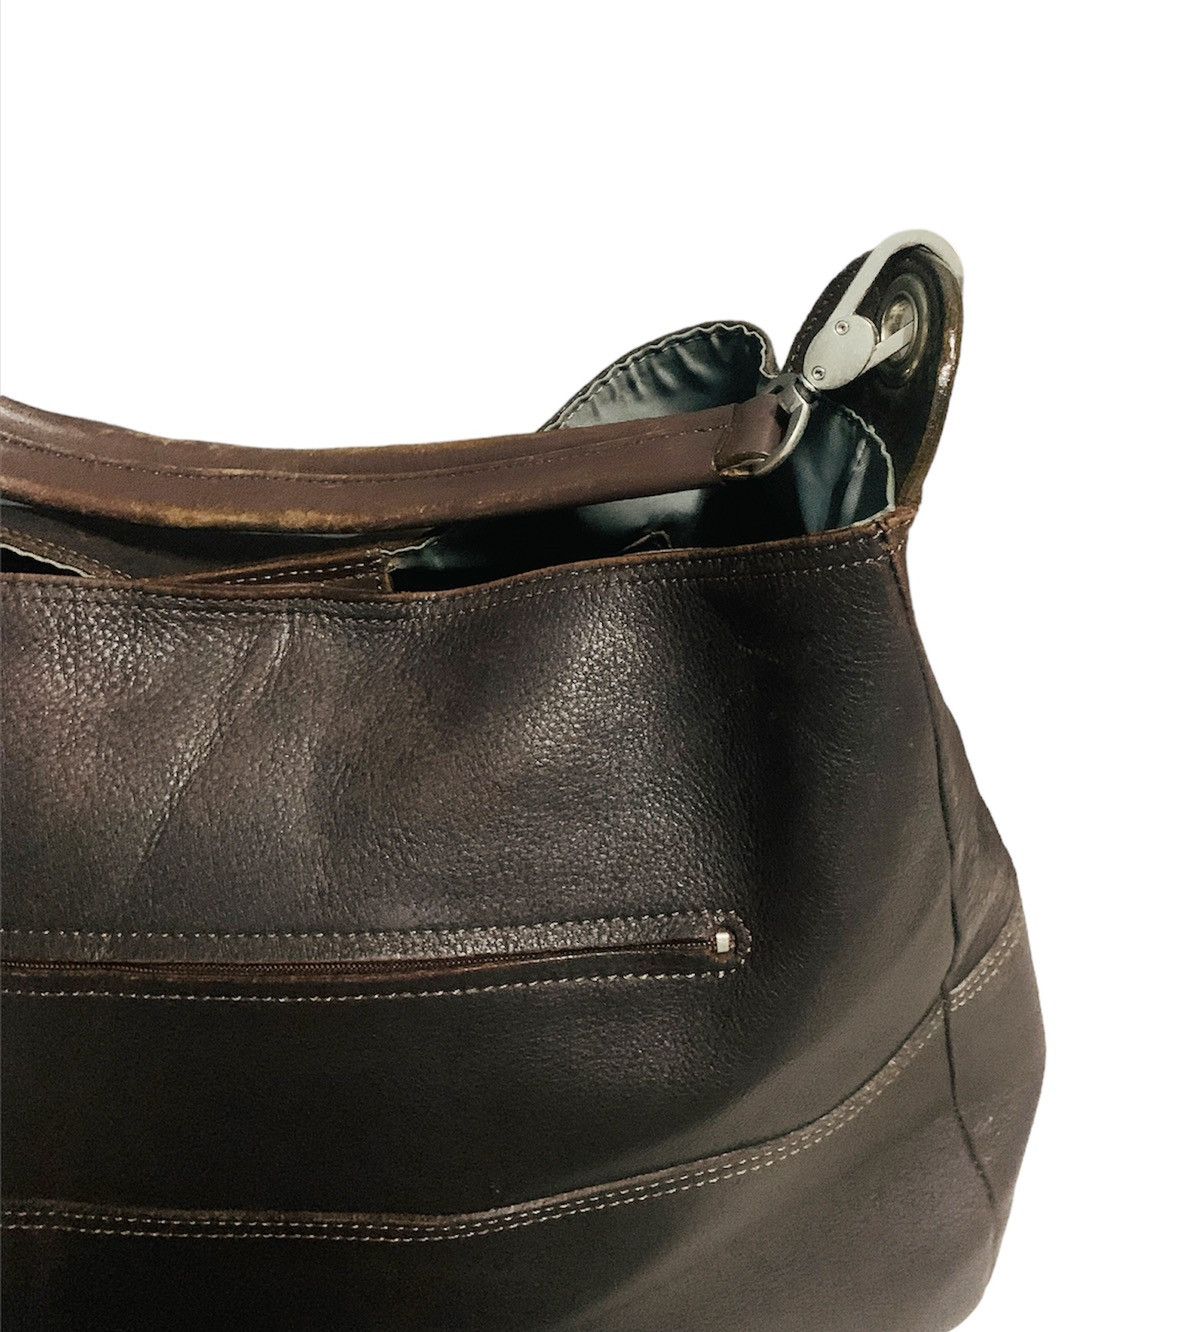 Margaret Howell Margaret Howell brown leather sling/shoulder bag Size ONE SIZE - 6 Thumbnail